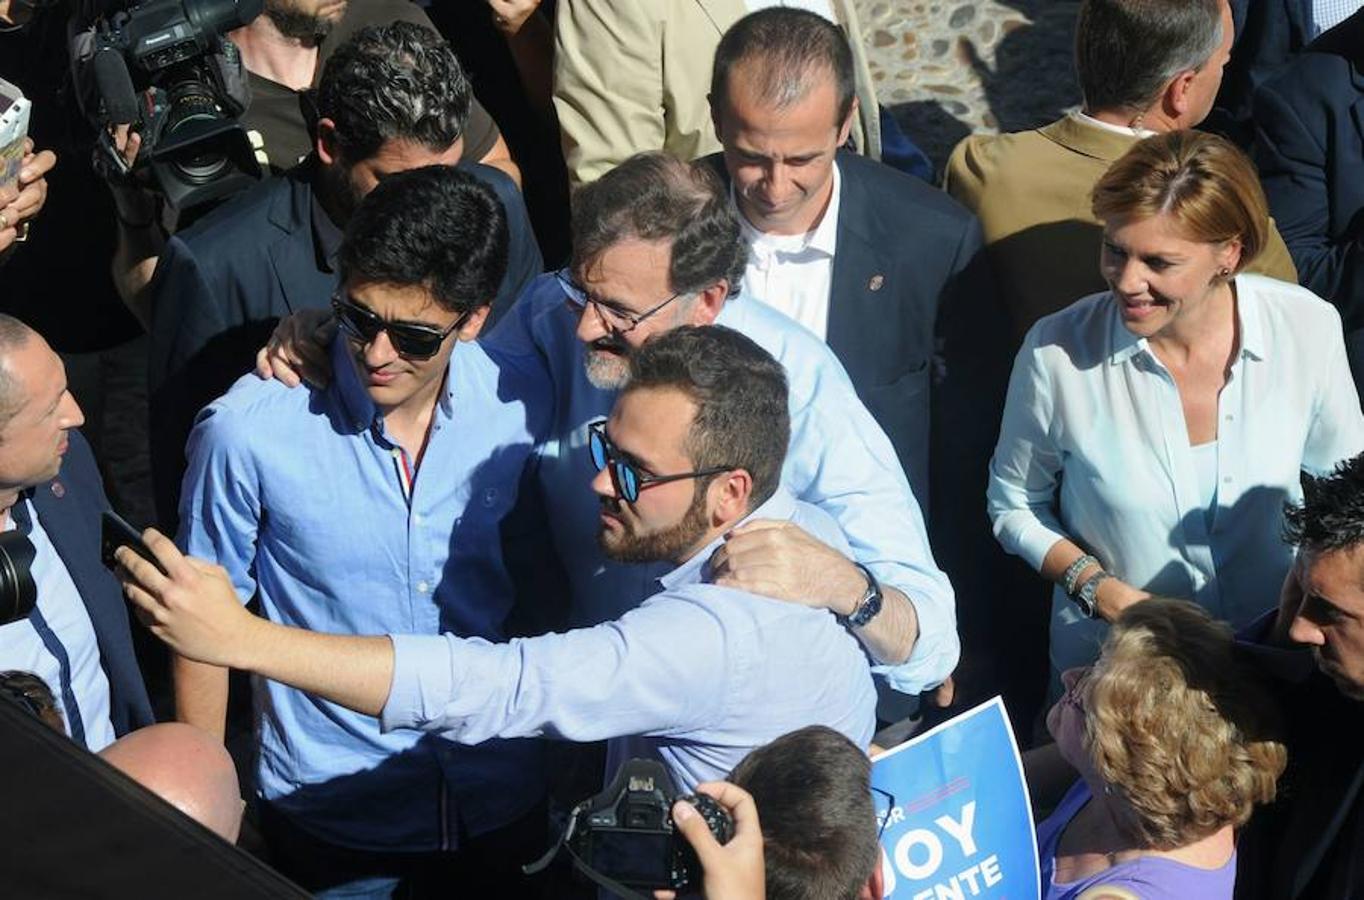 Rajoy ha tardado cerca de 20 minutos en recorrer un espacio de 20 metros entre numerosos «selfies» y abrazos